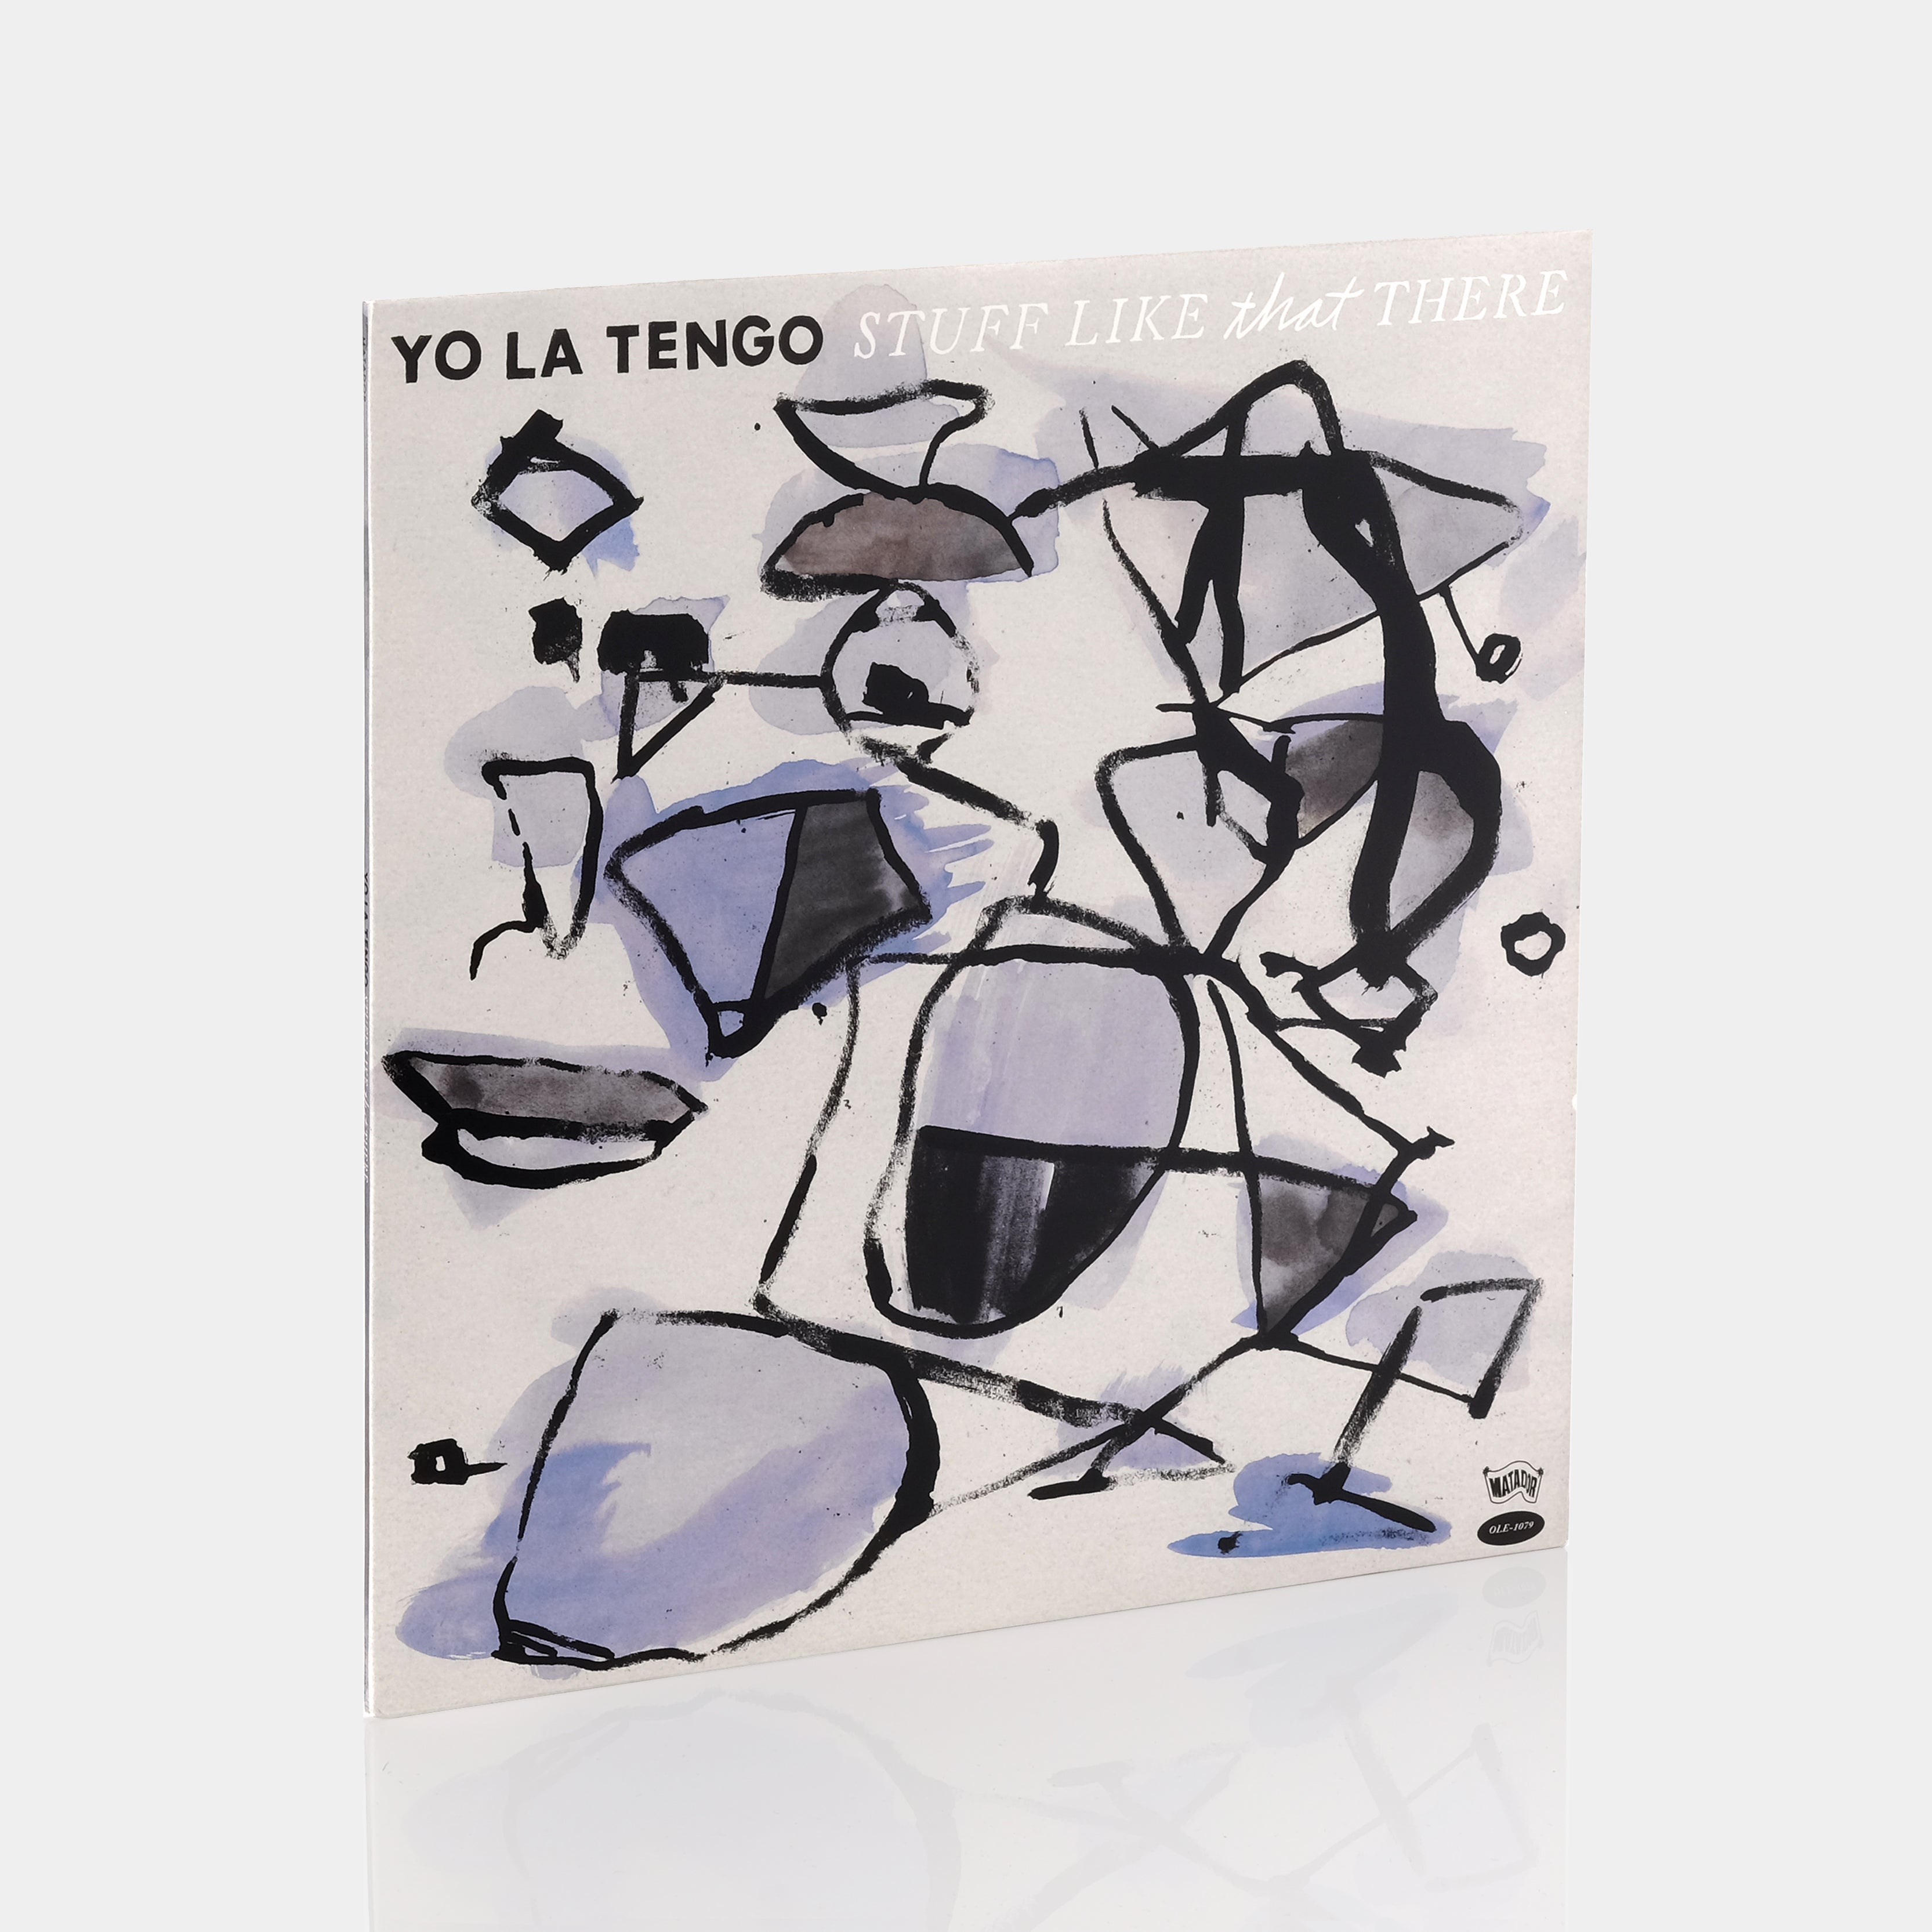 Yo La Tengo - Stuff Like That There LP Vinyl Record